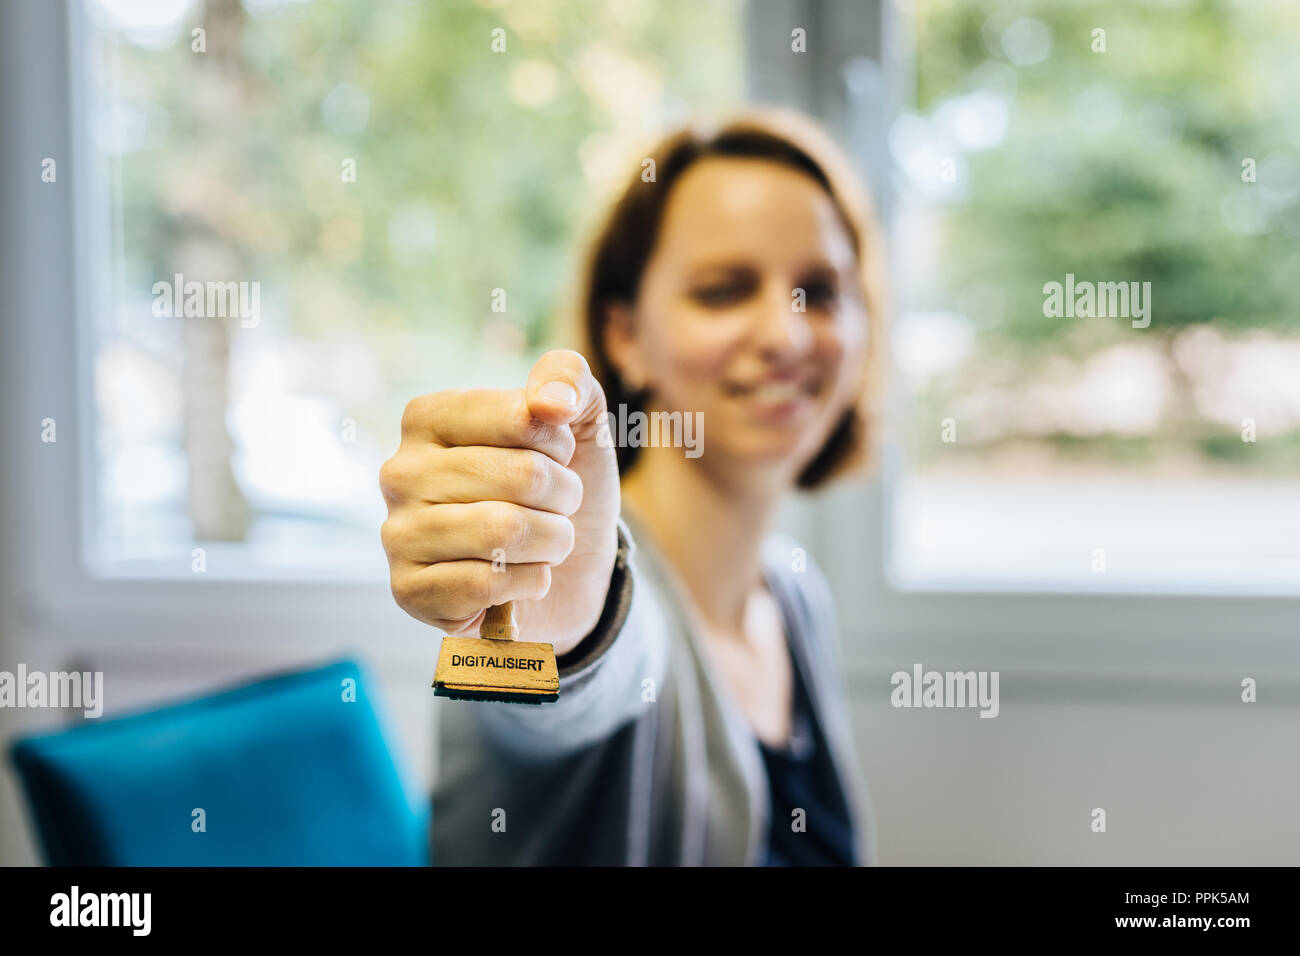 Una donna in un ufficio detiene un francobollo di legno con la parola tedesca "igitalisiert' che significa 'igitalized' nella fotocamera, la profondità di campo Foto Stock